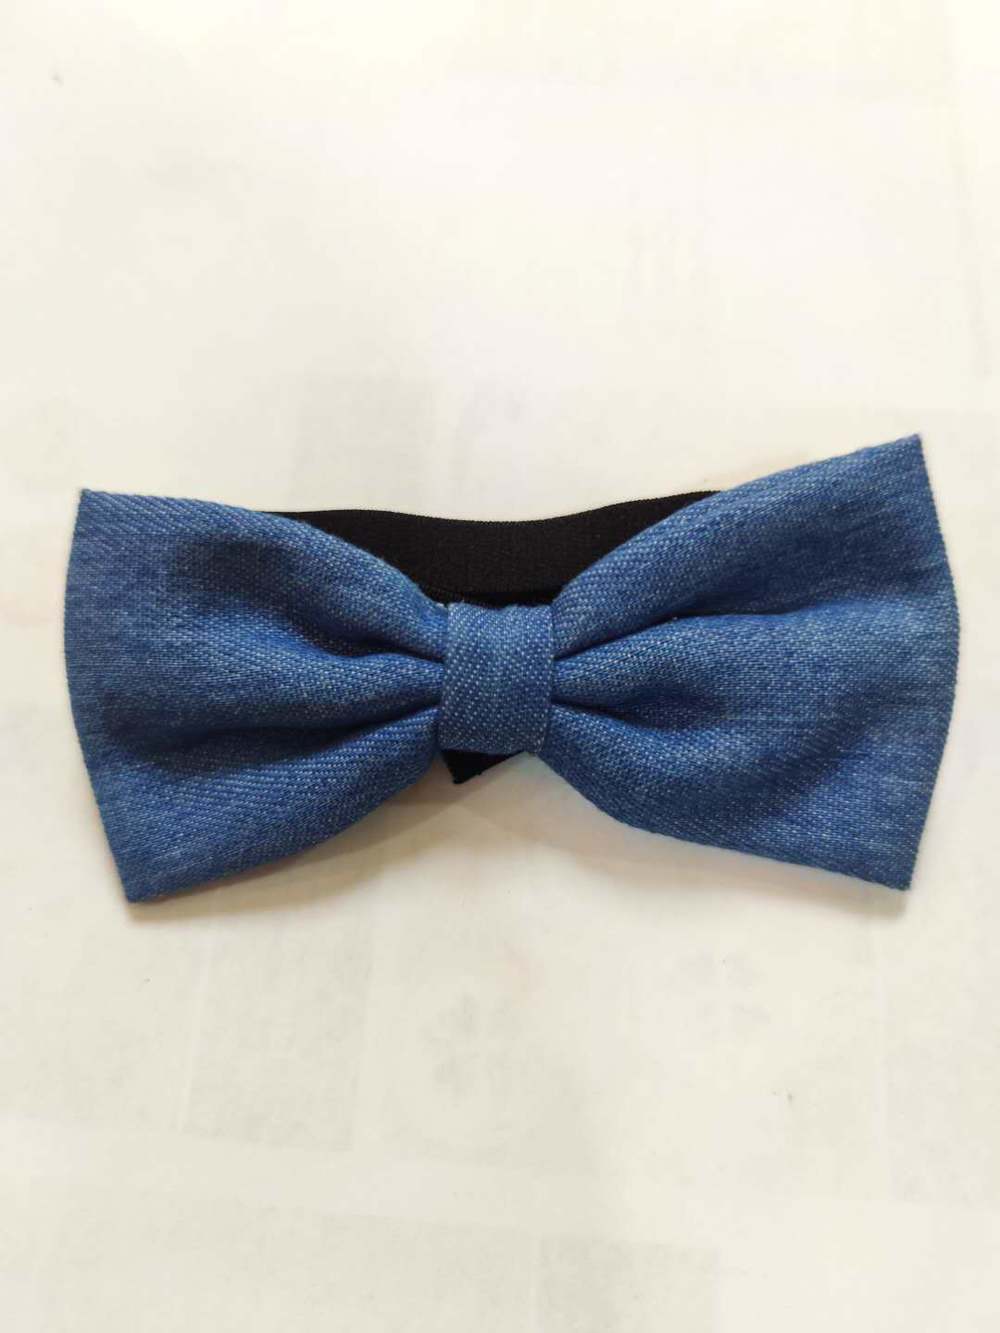 Blue bow headband